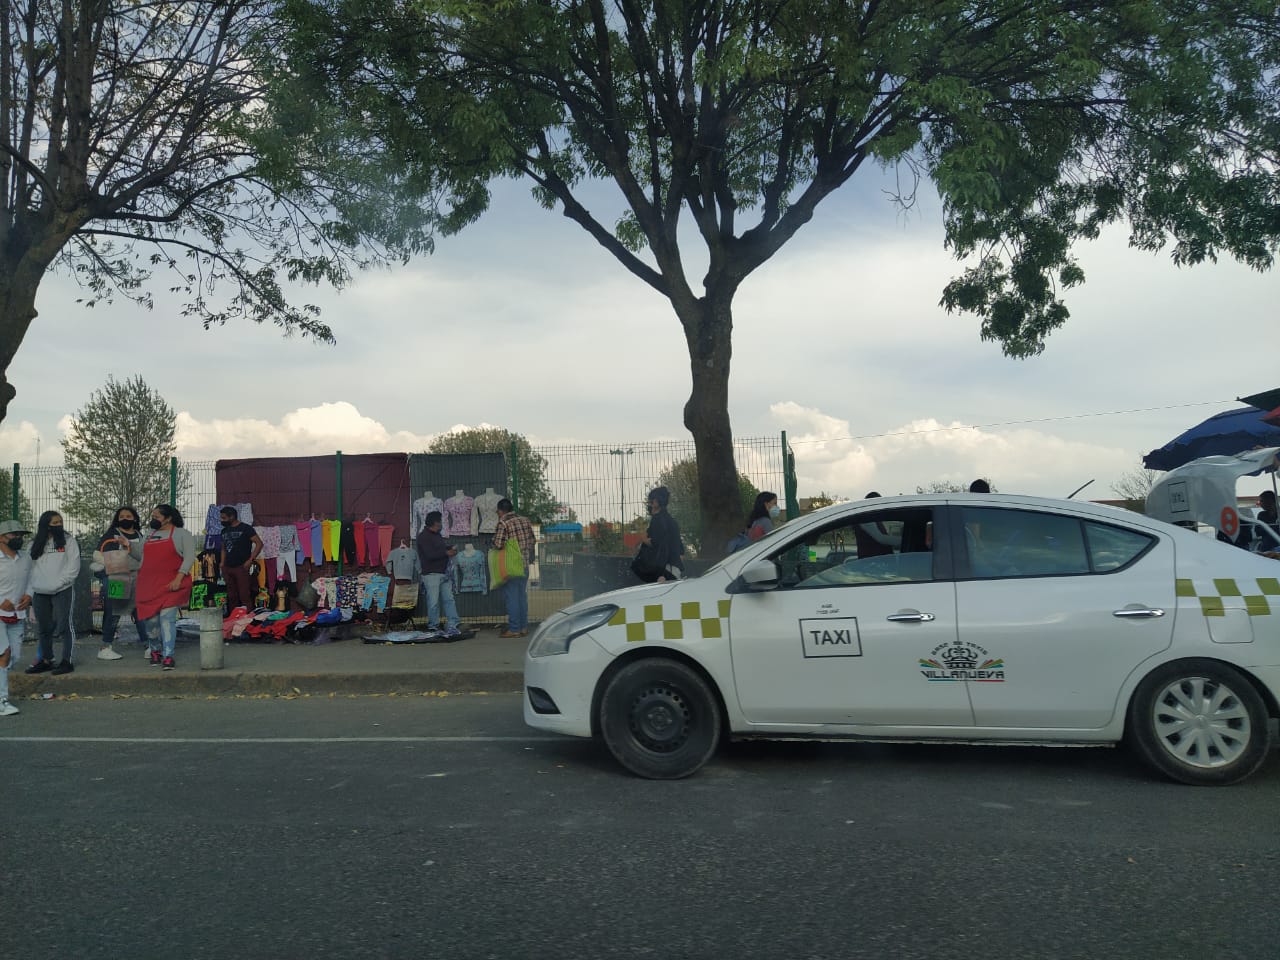 ATUEM: No subirán tarifas los taxistas del valle de Toluca